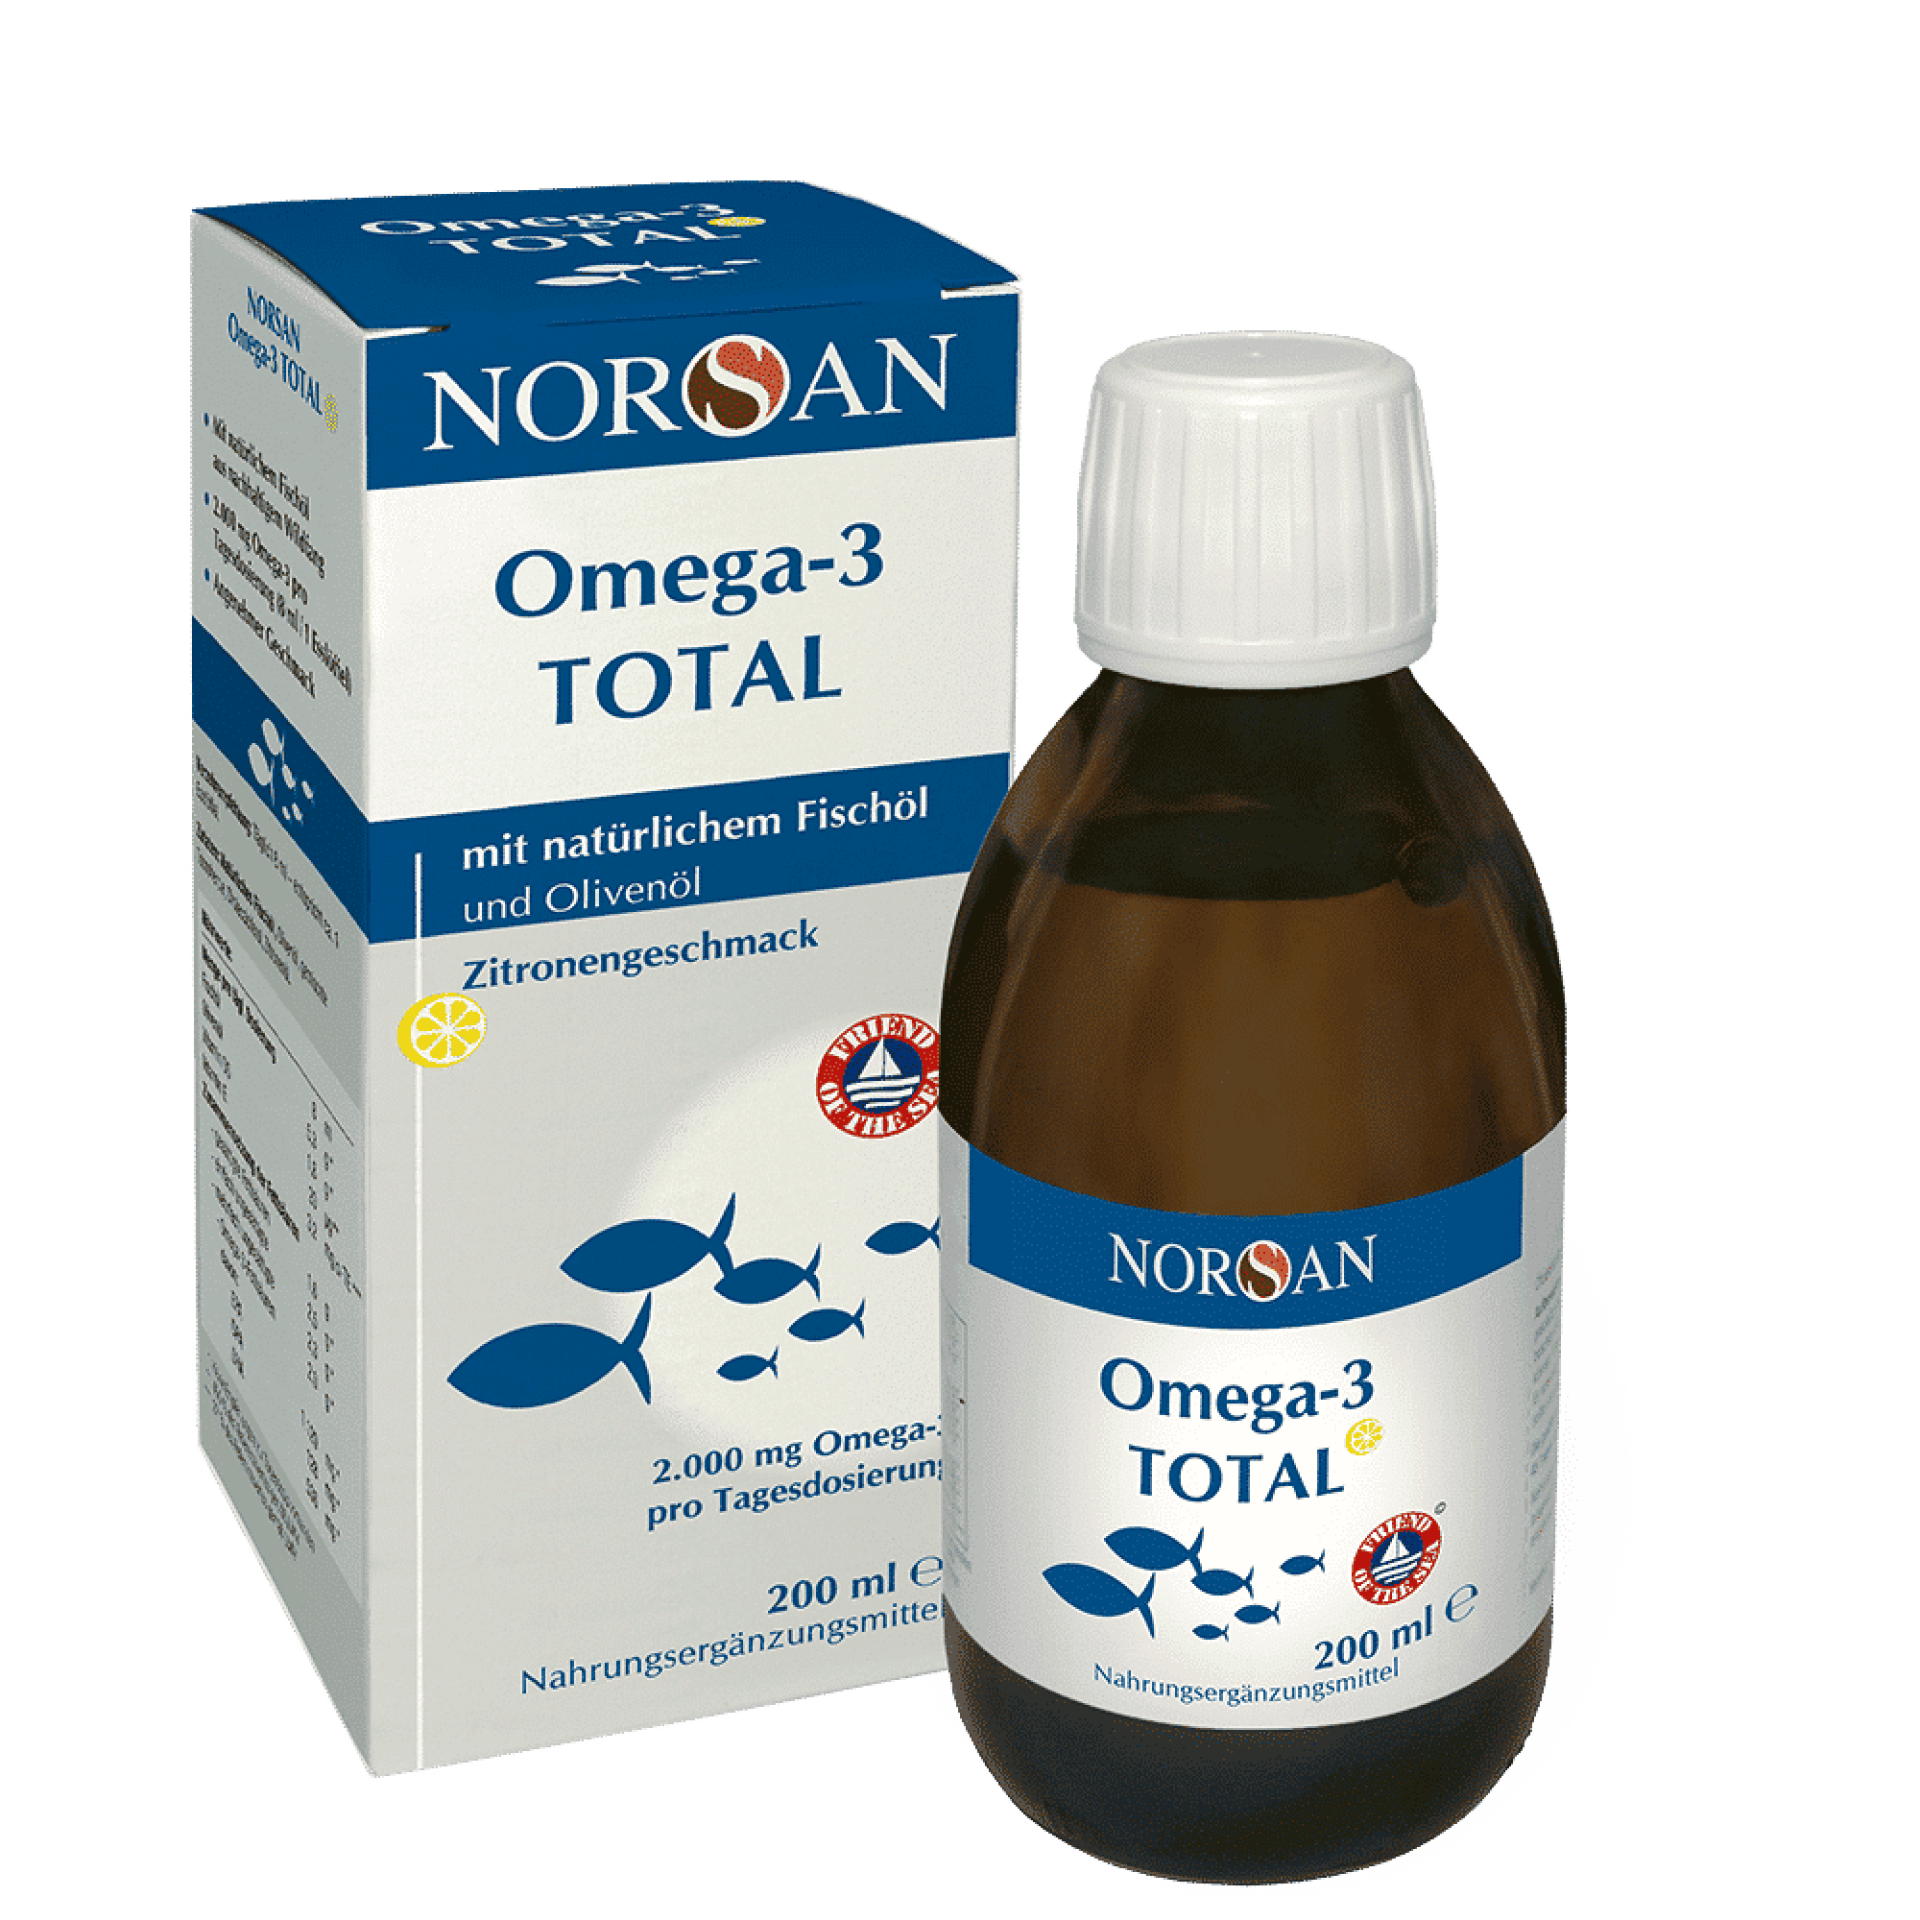 Norsan Omega-3 Total Oil fles en verpakking